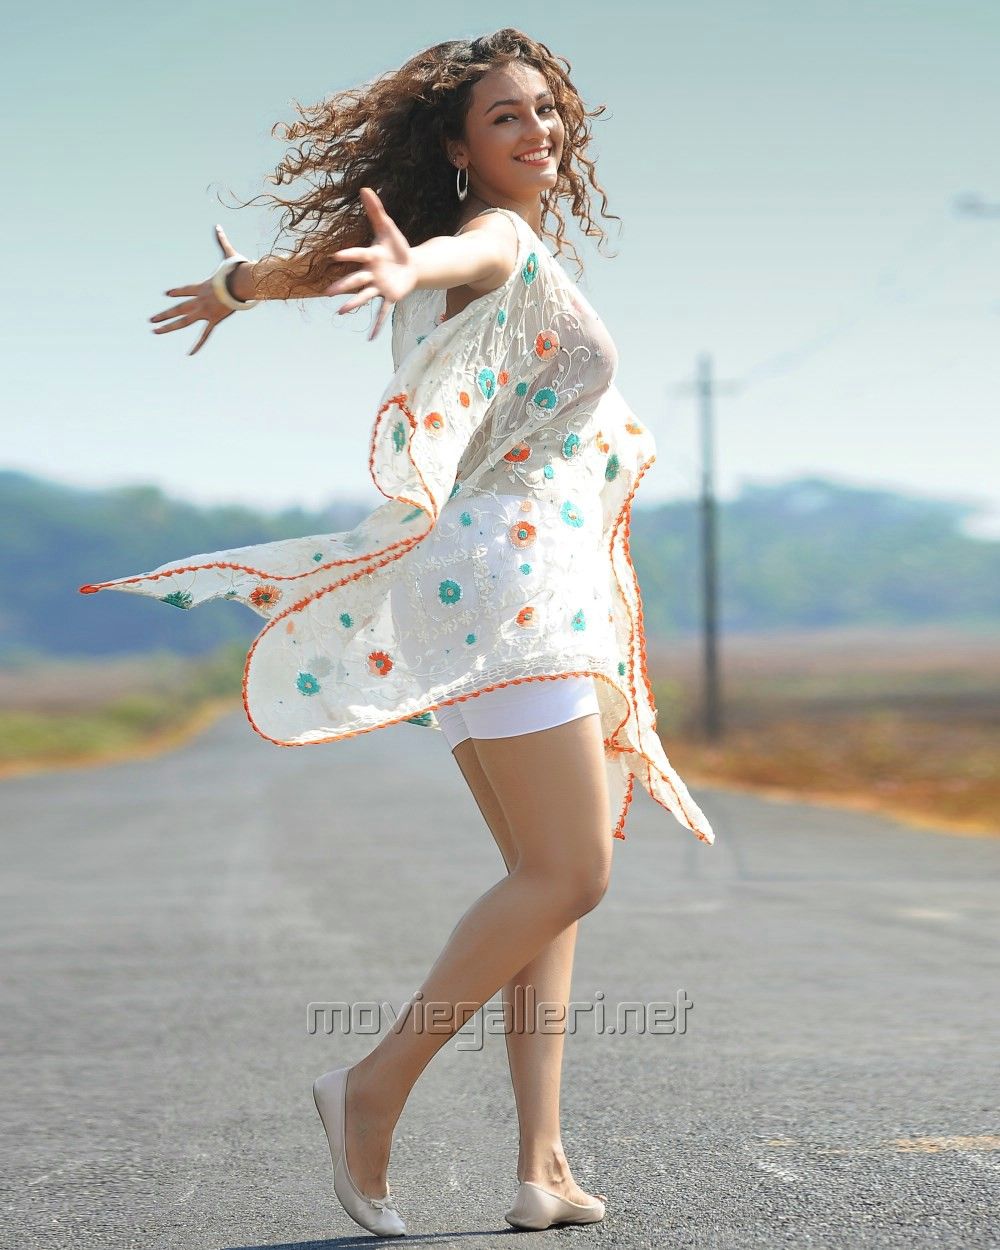 Run Raja Run Telugu Movie Stills. Sharwanand. Seerat Kapoor. New Movie Posters